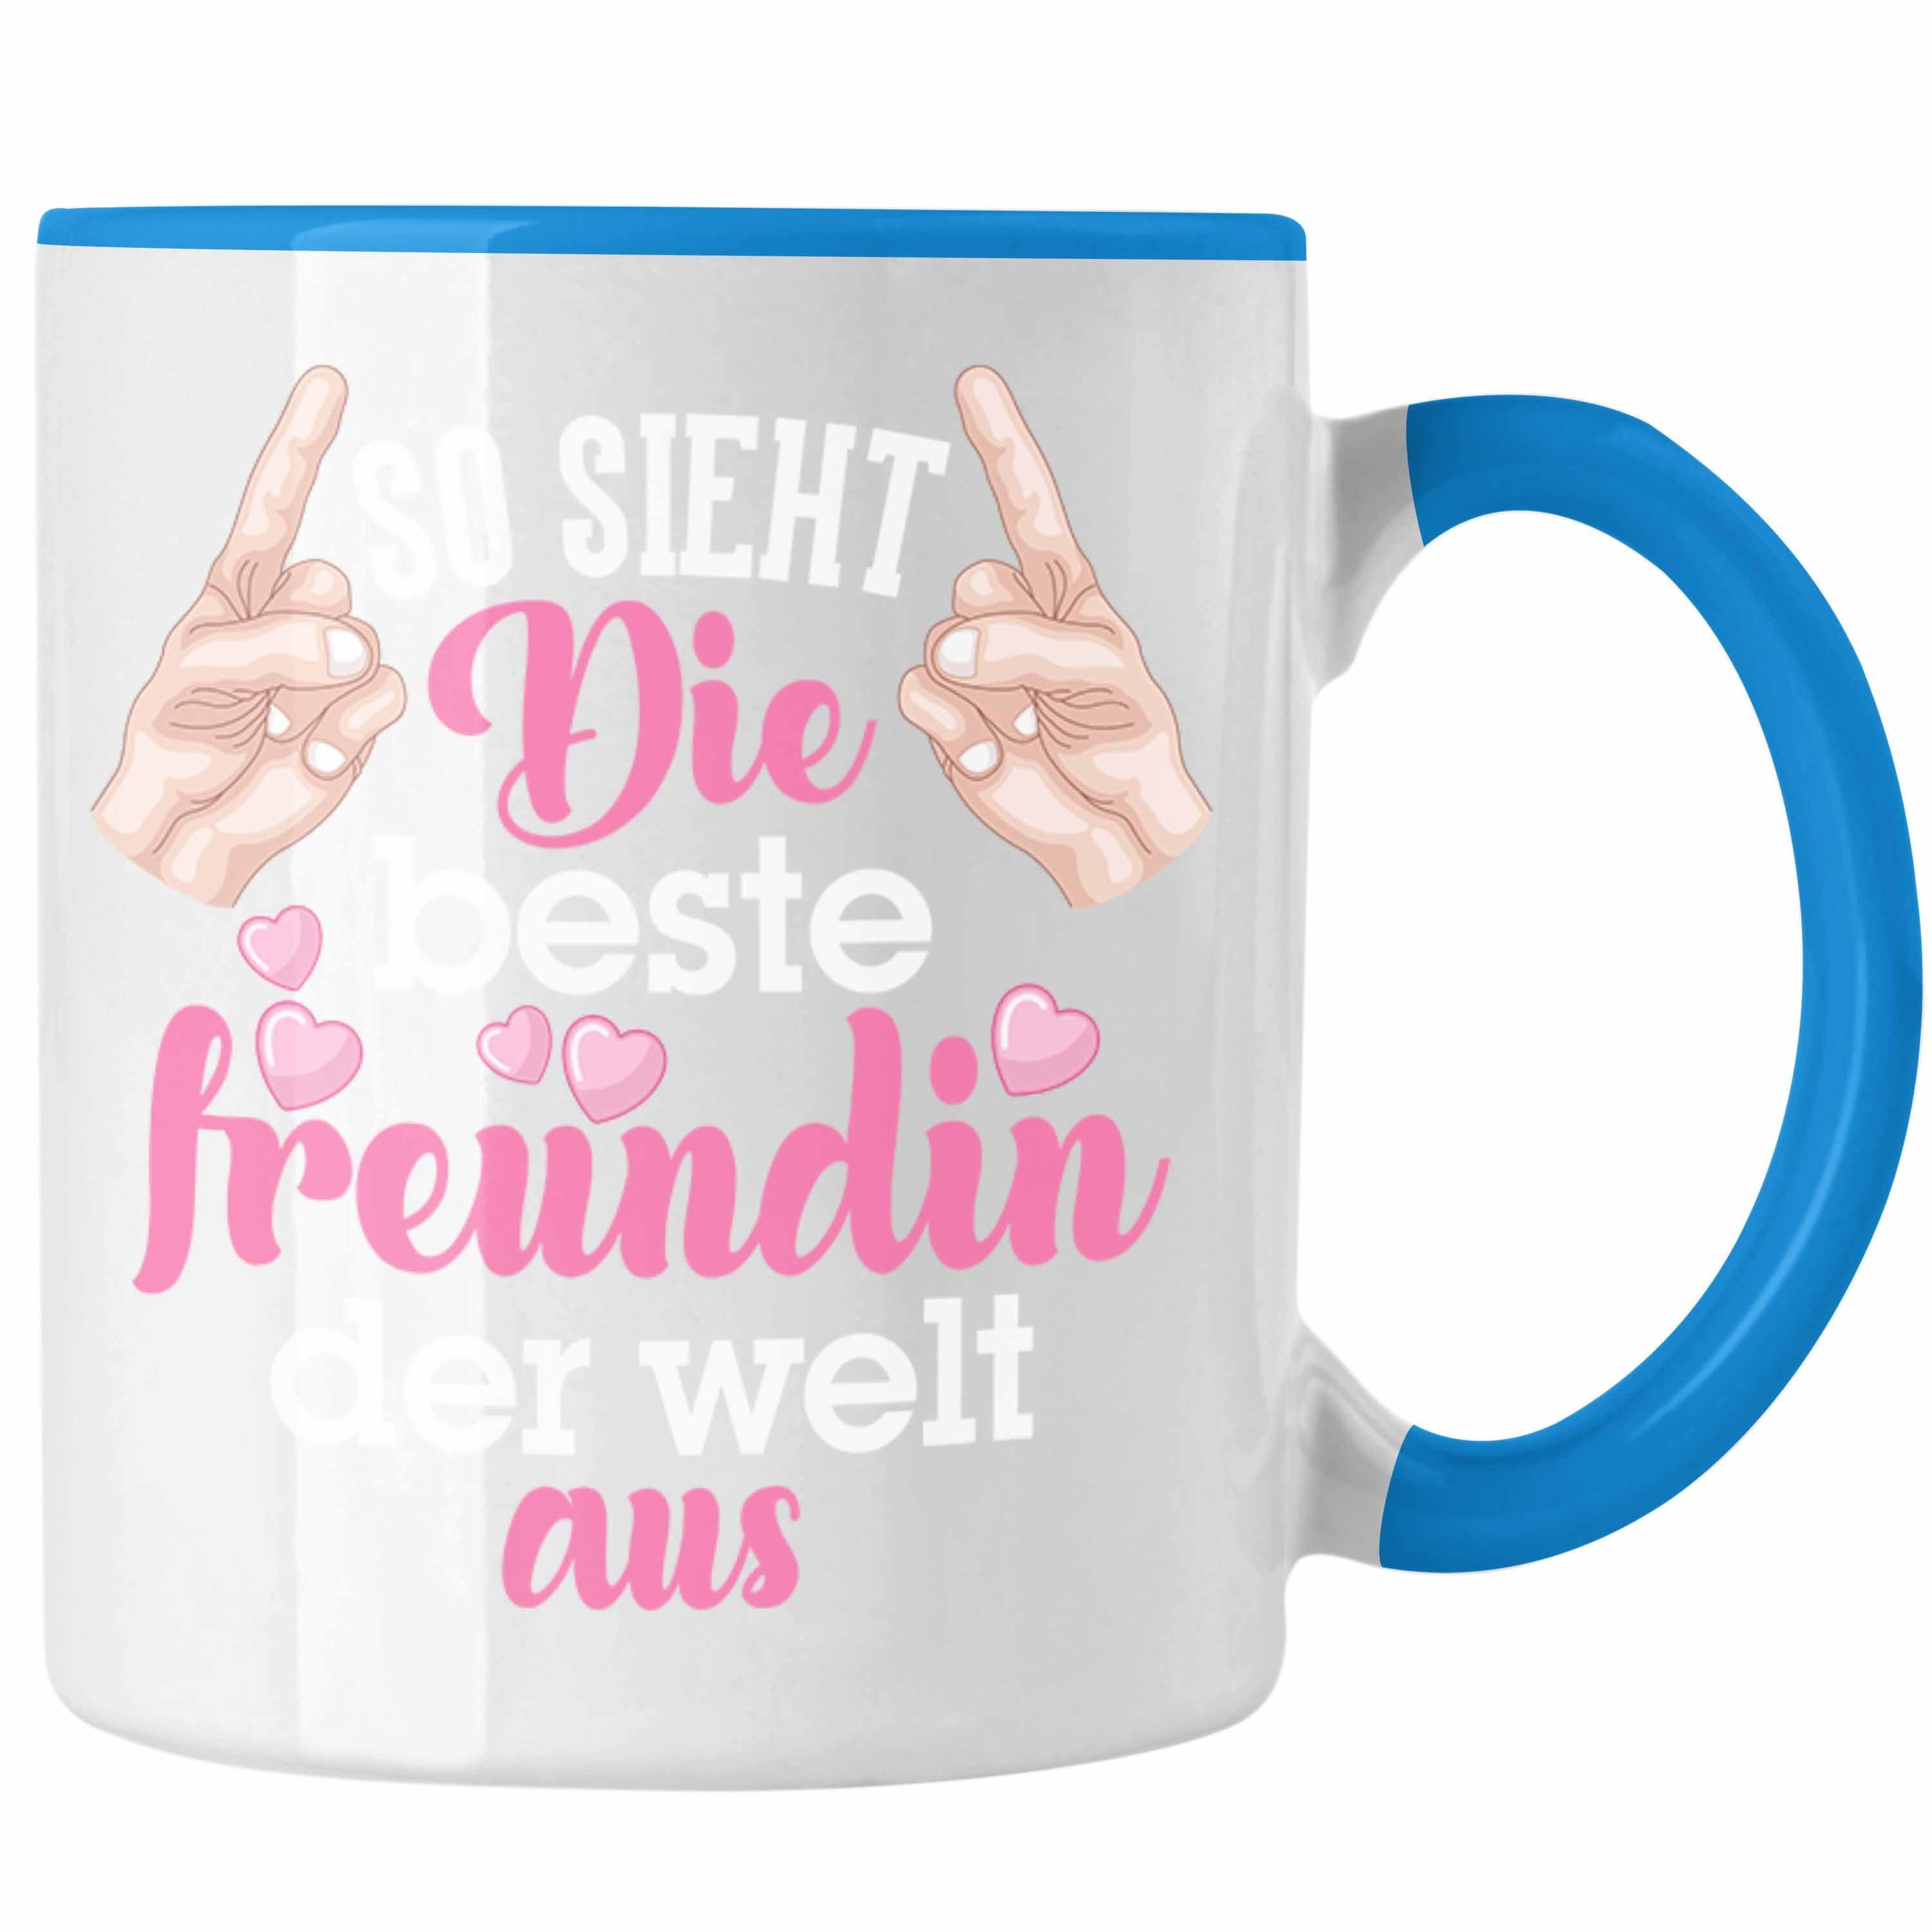 Trendation Tasse Trendation - Beste Freundin Tasse Geschenk Kaffeetasse Geschenkidee BFF Allerbeste Freundin Spruch Geburtstag Freundinnen Geschenkidee Blau